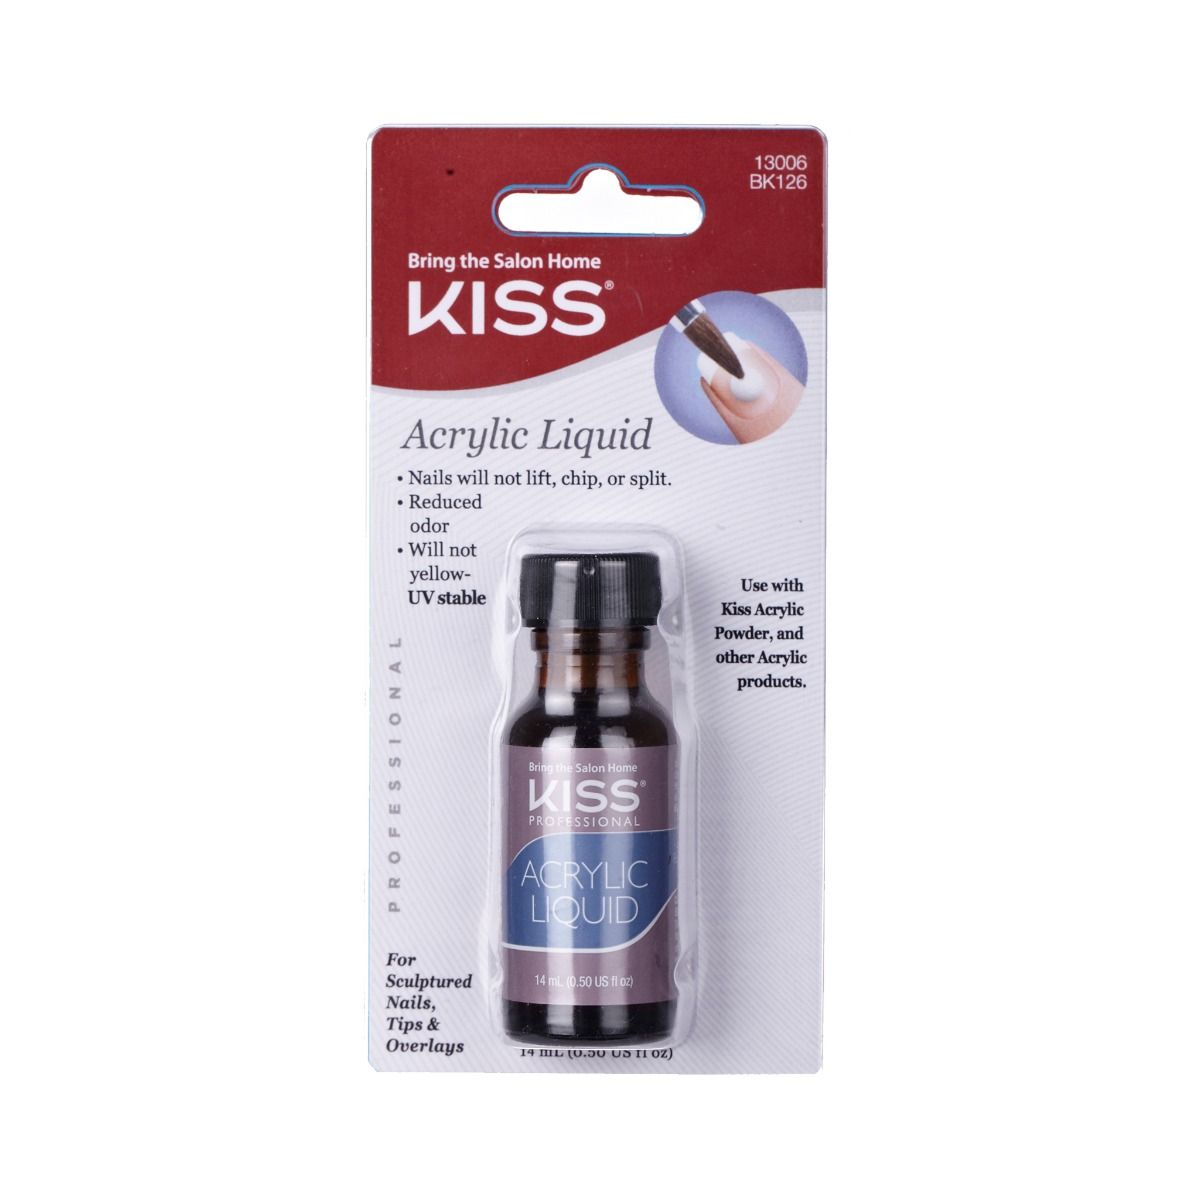 KISS BLISTER - ACRYLIC LIQUID BK126